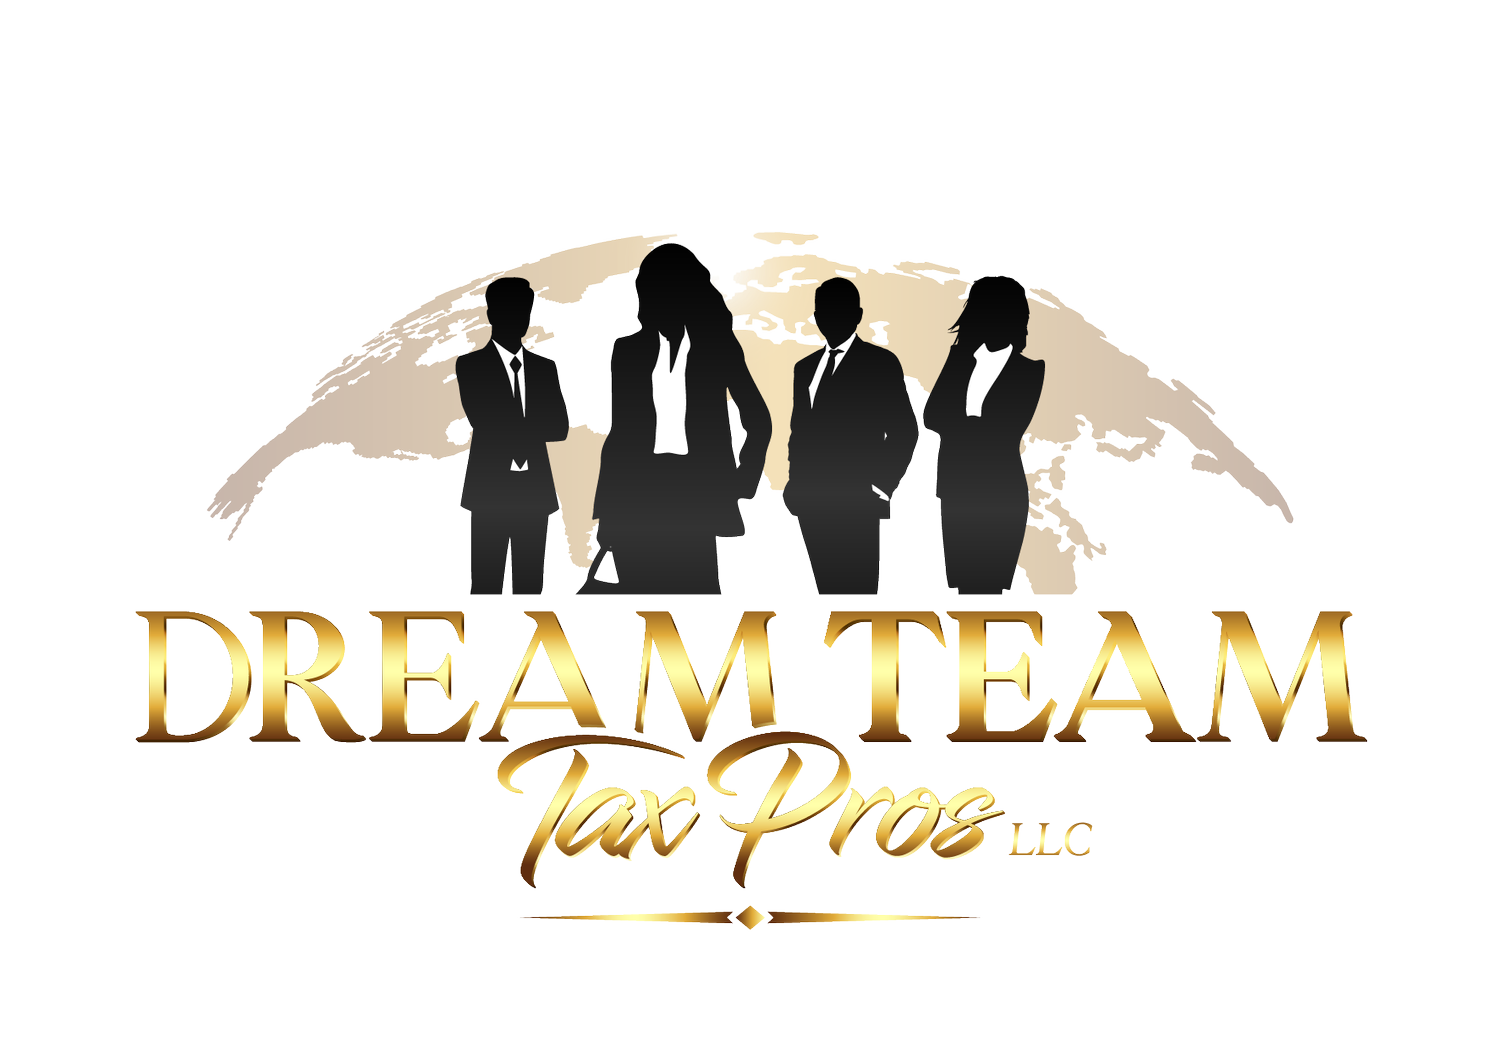 DREAM TEAM TAX PROS LLC 